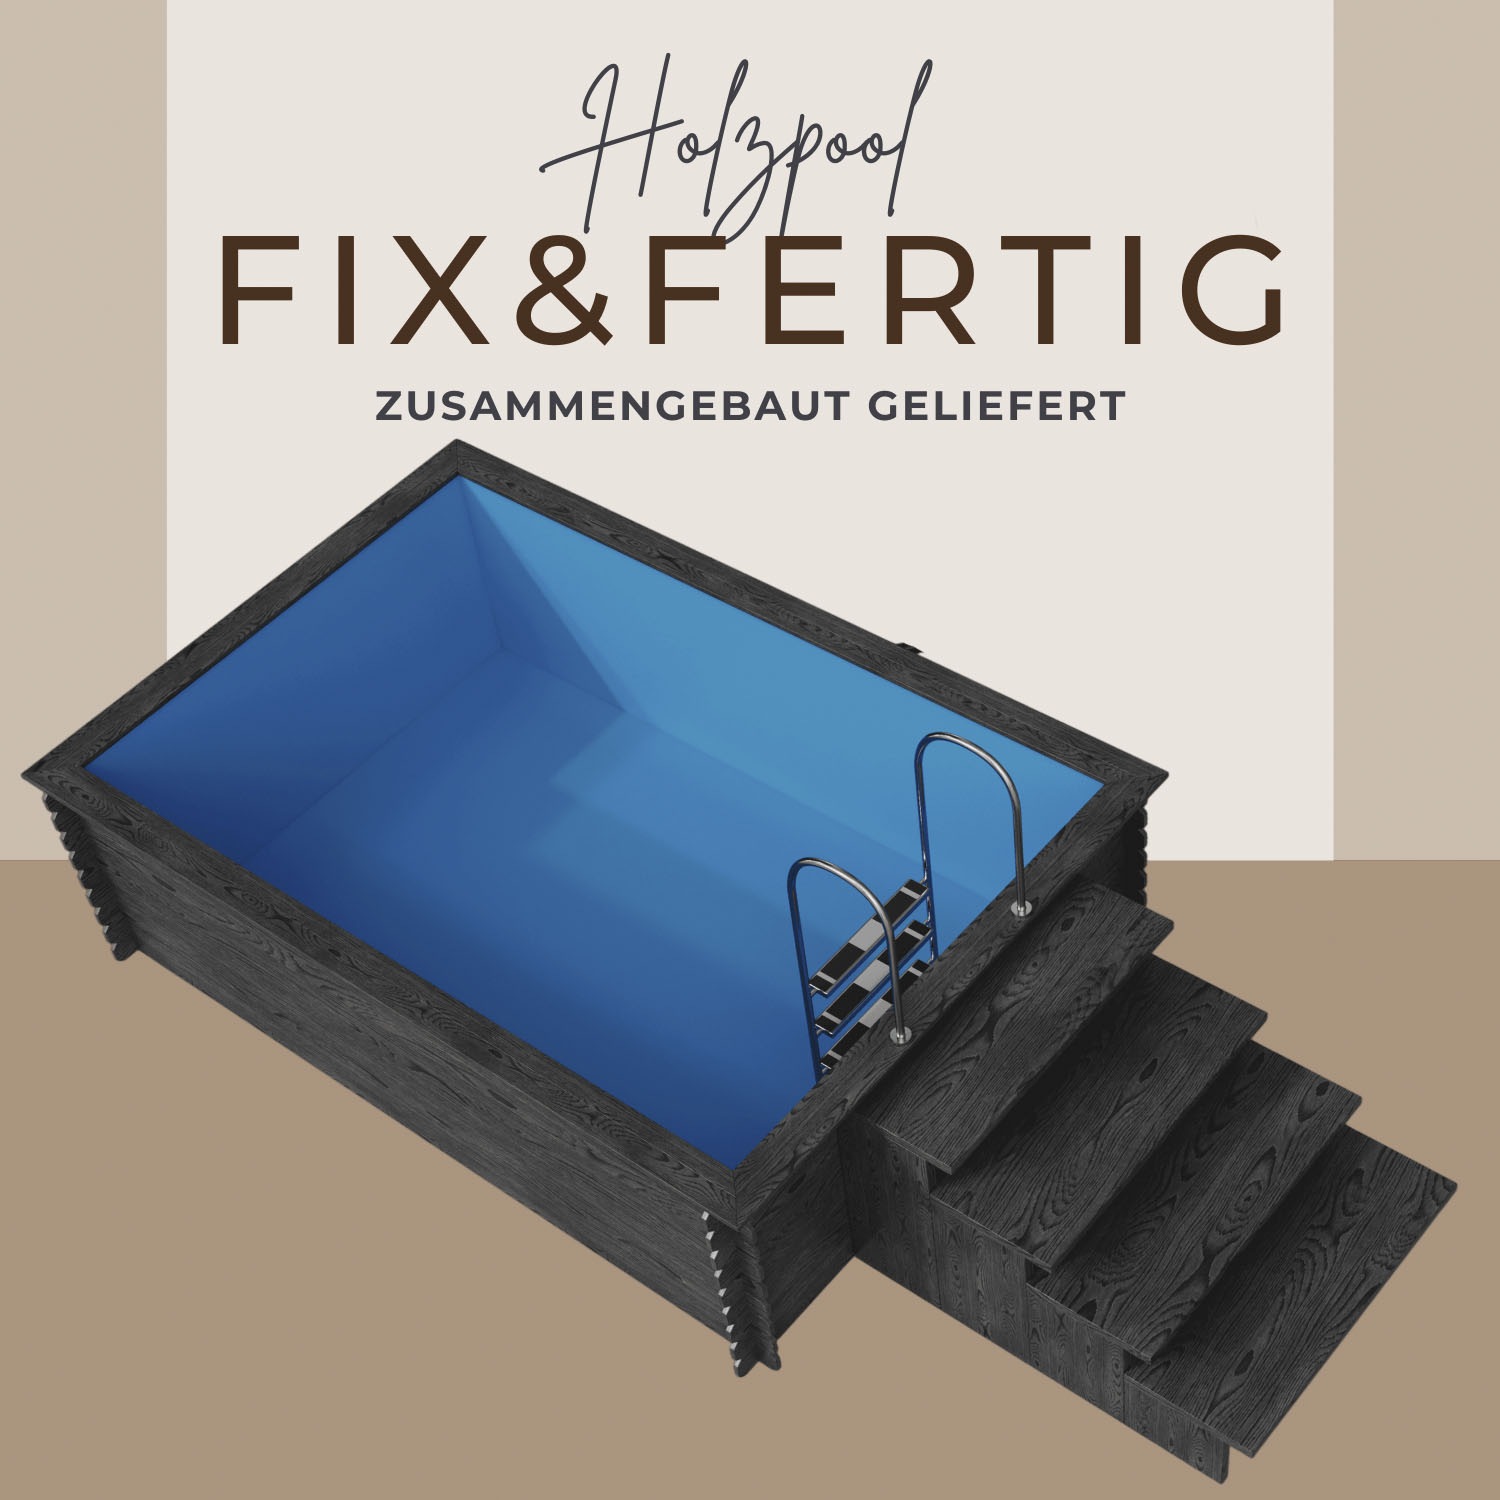 EDEN Holzmanufaktur Rechteckpool »Fix&Fertig Fichtenholz Pool«, inkl. blauem Einsatz, Dämmung, Einstiegstreppe & -Leiter, Wasserablauf